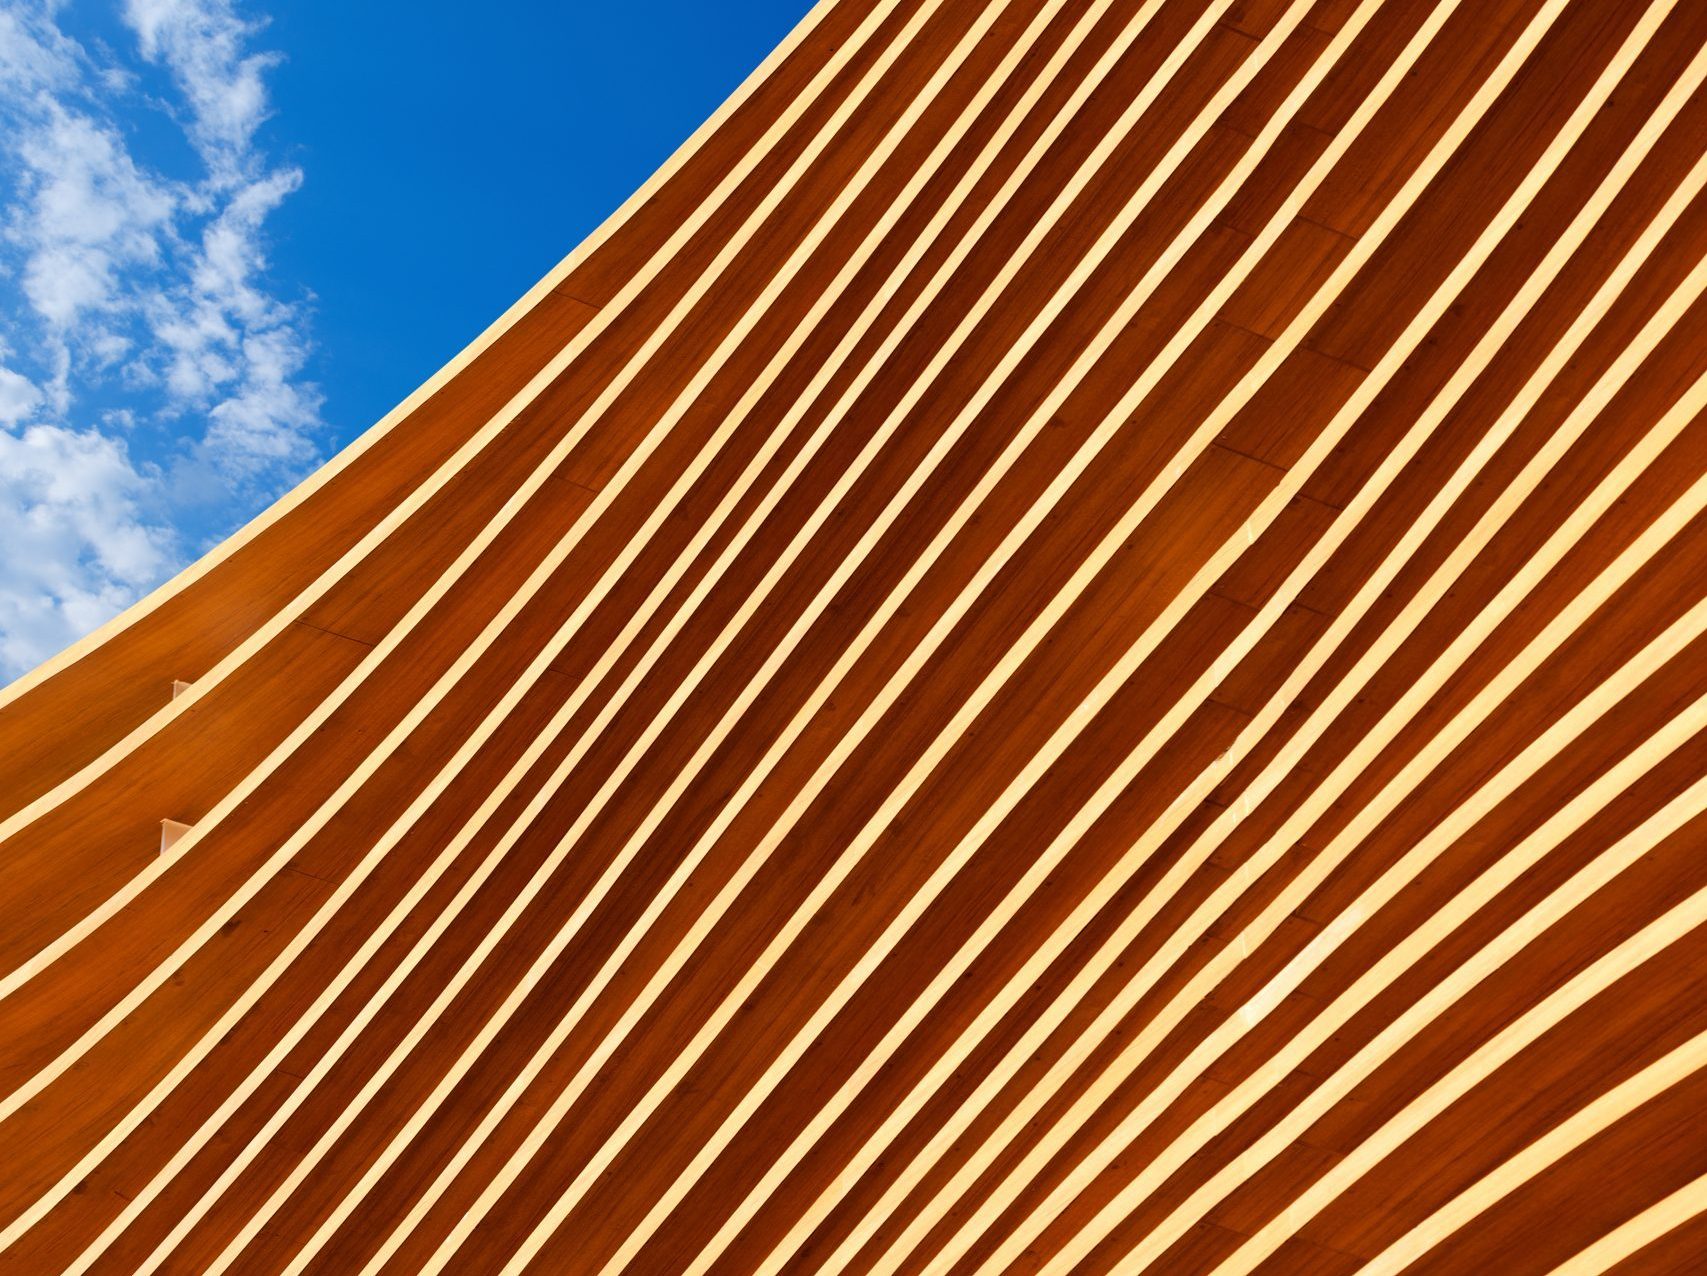 Närbild på moden träarkitektur mot en blå himmel med moln